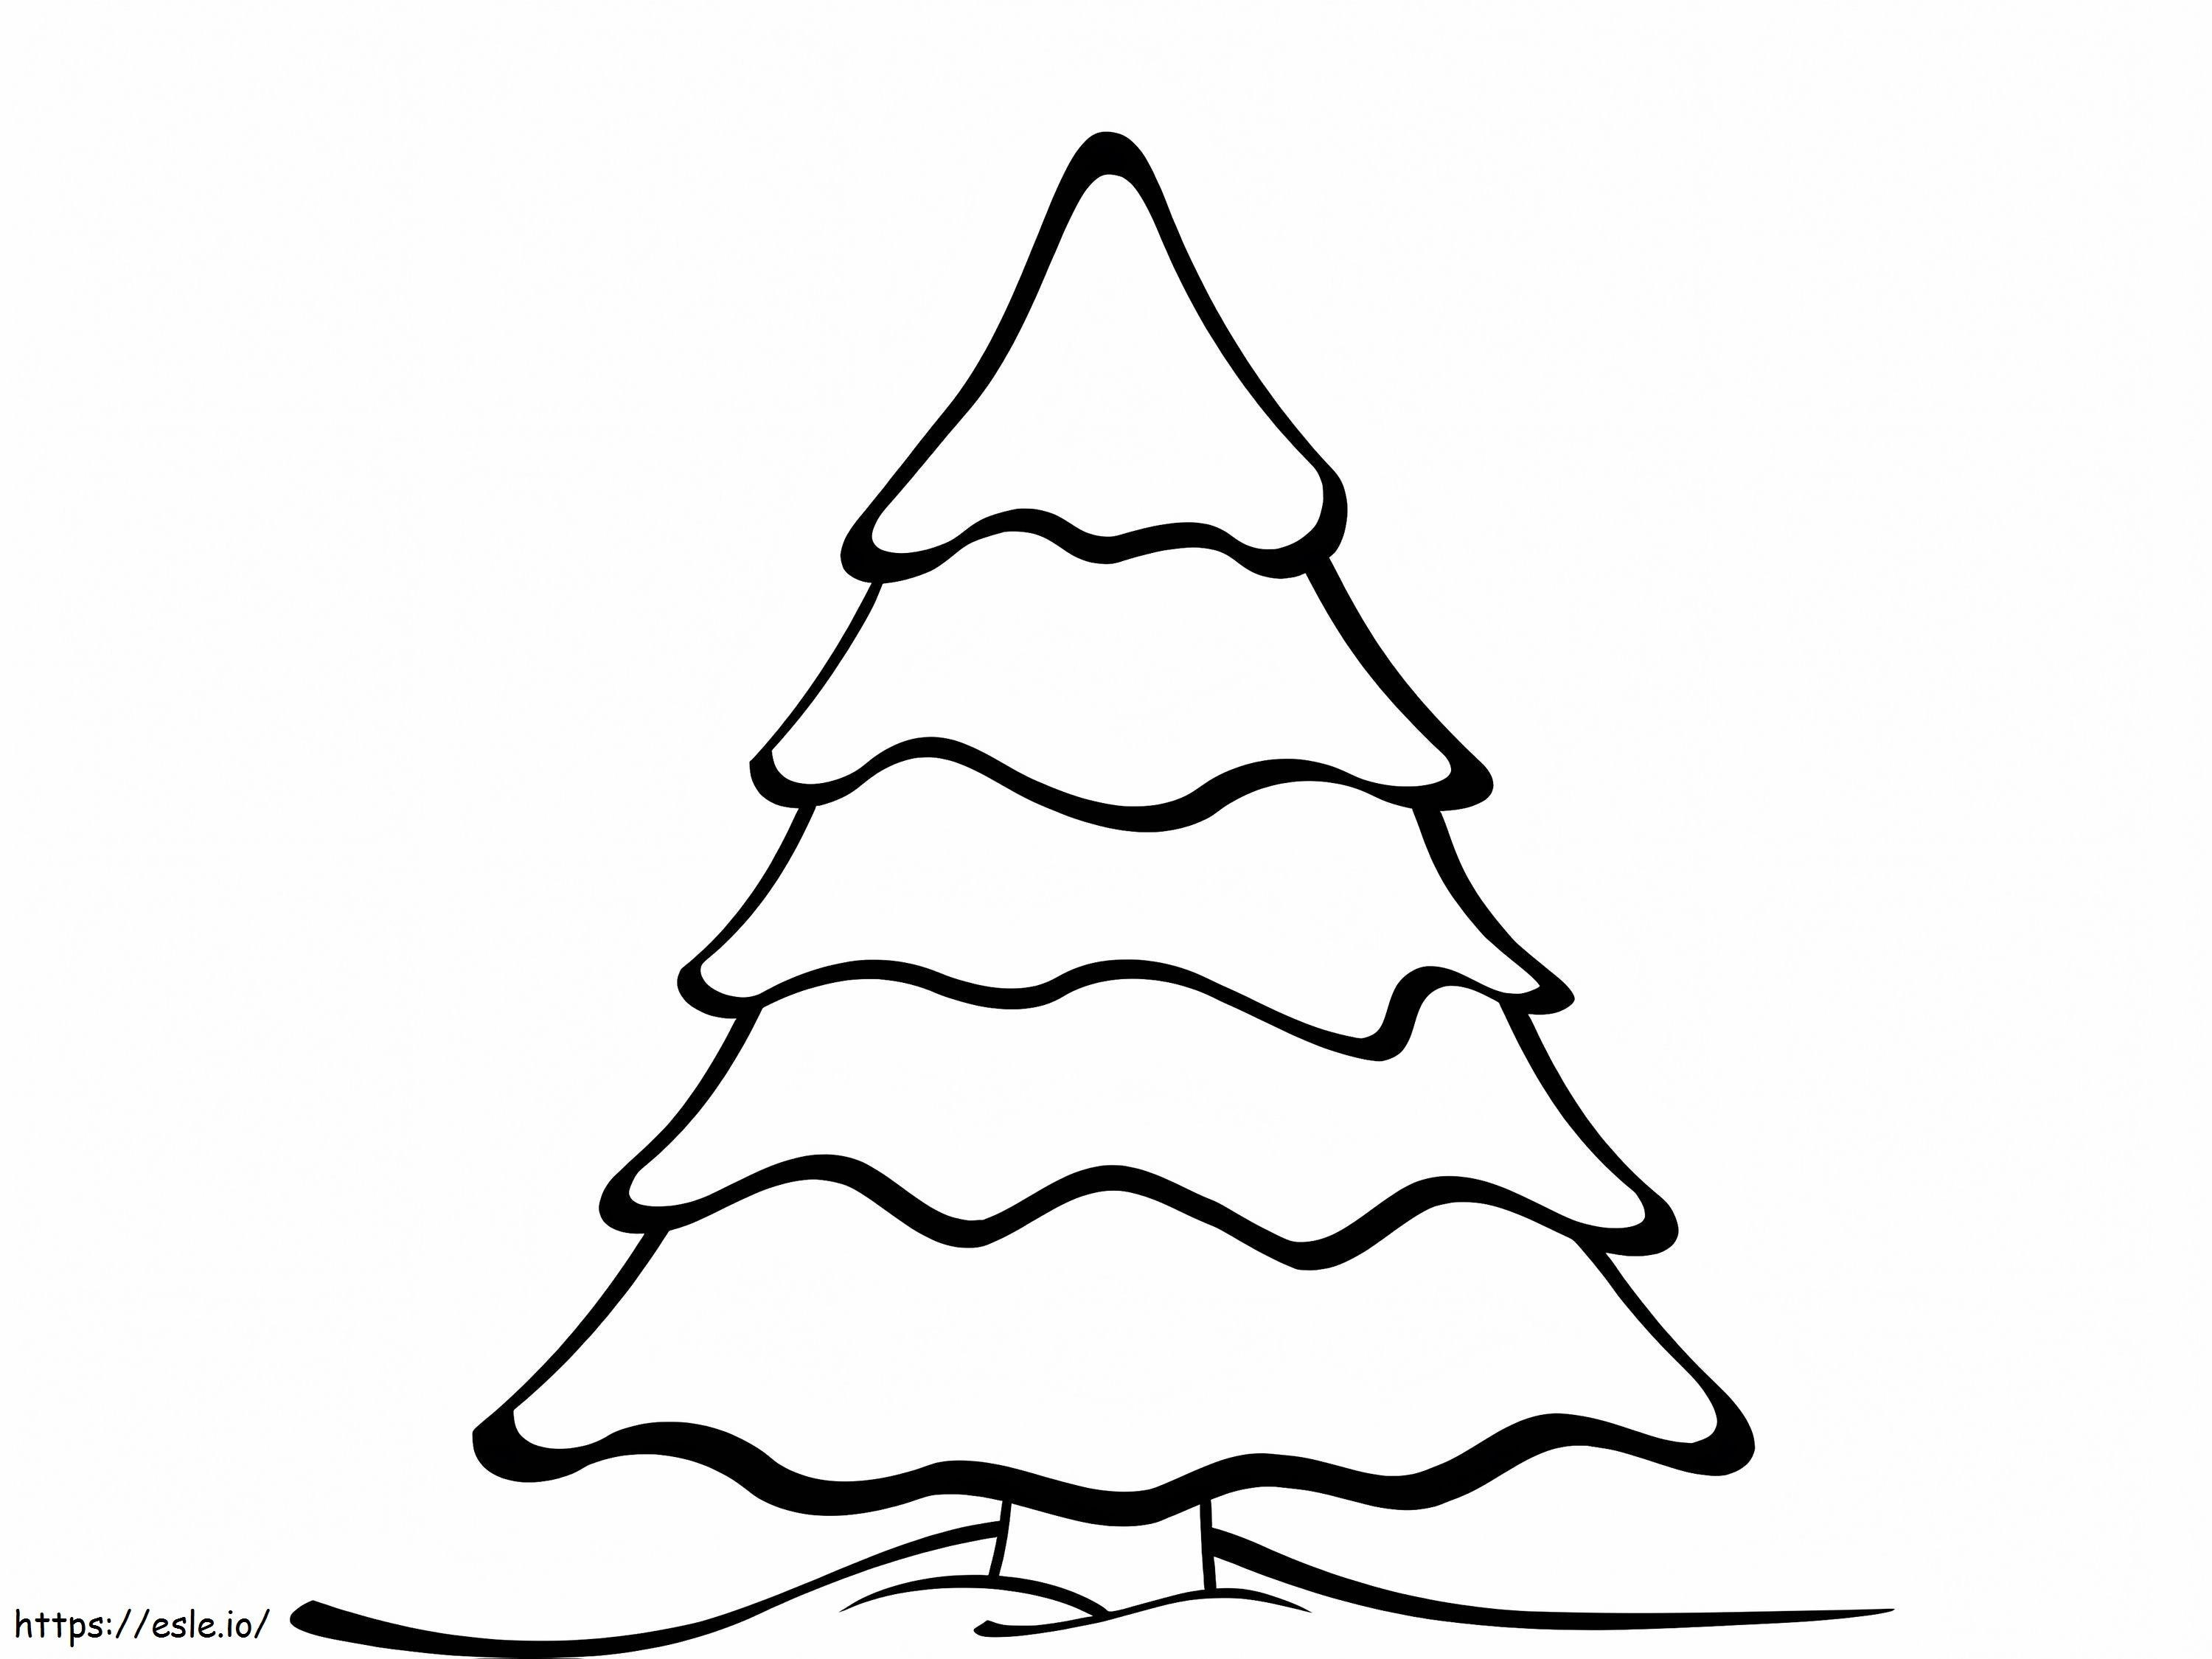 Weihnachtsbaumzeichnung ausmalbilder